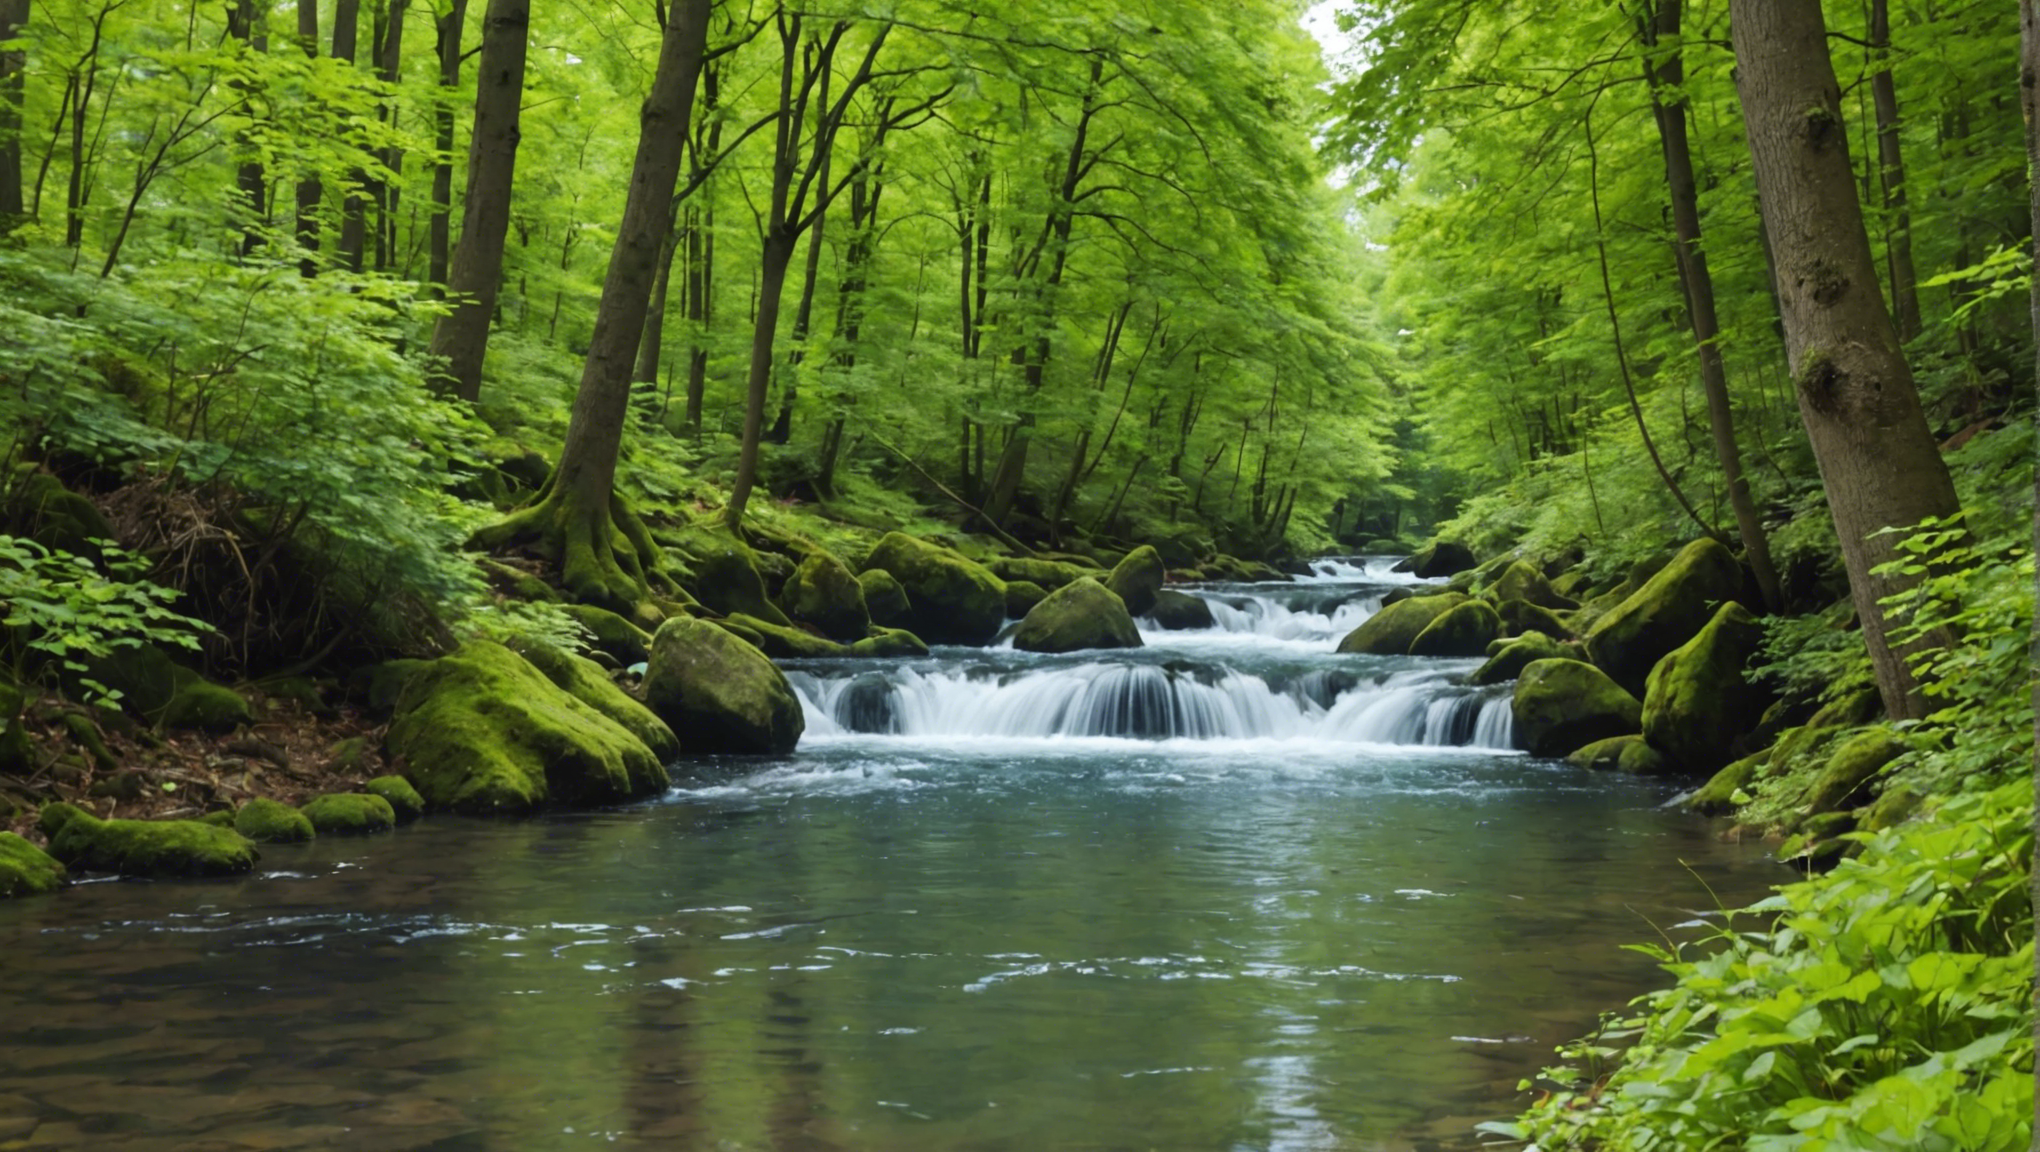 découvrez comment valoriser l'eau pour protéger notre environnement et préserver nos ressources naturelles.